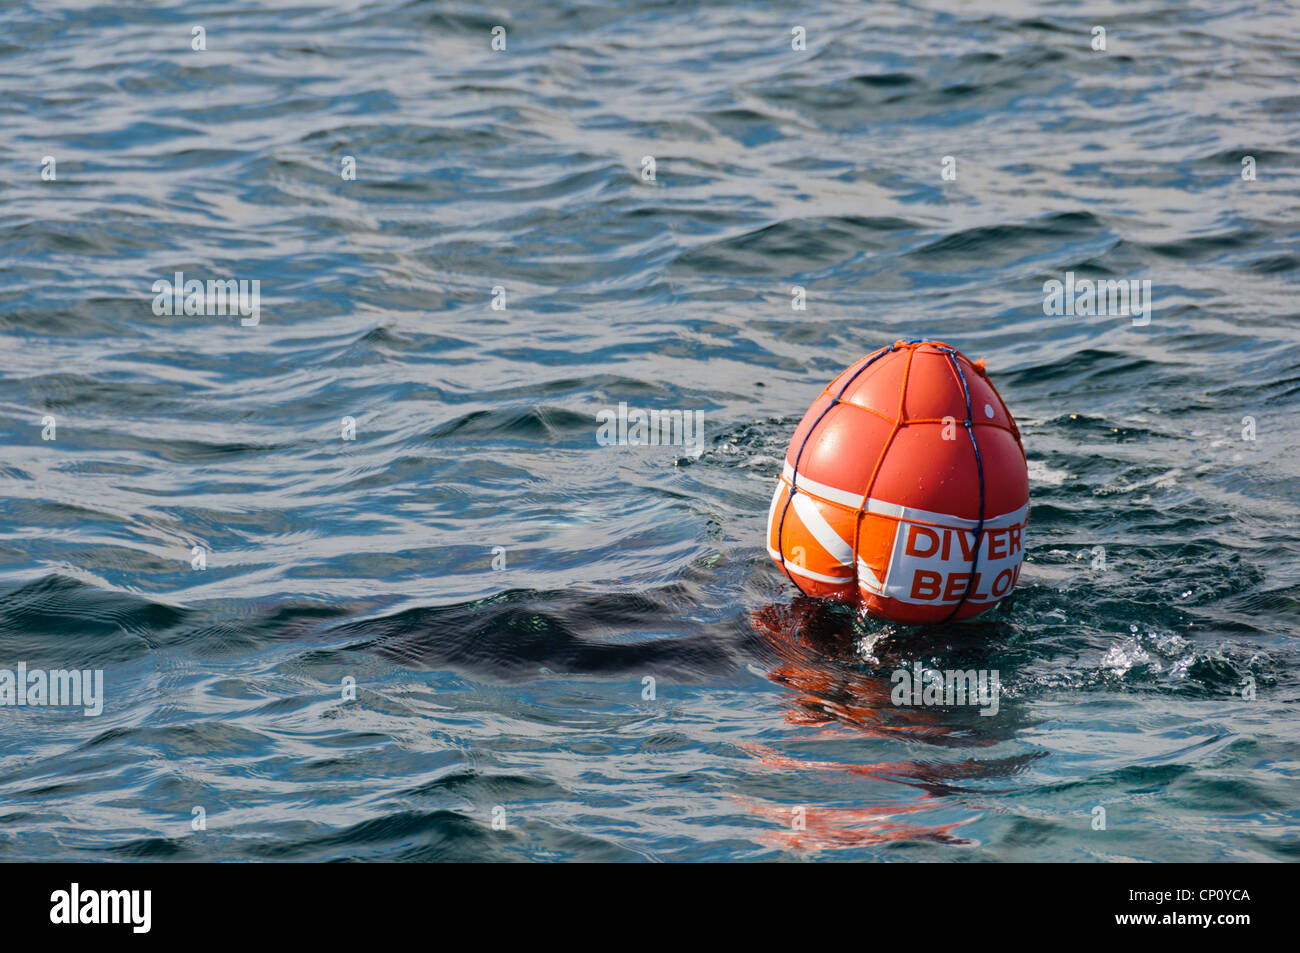 La plongée bouée de surface ballon SMB 'DIVER CI-DESSOUS' flag Banque D'Images